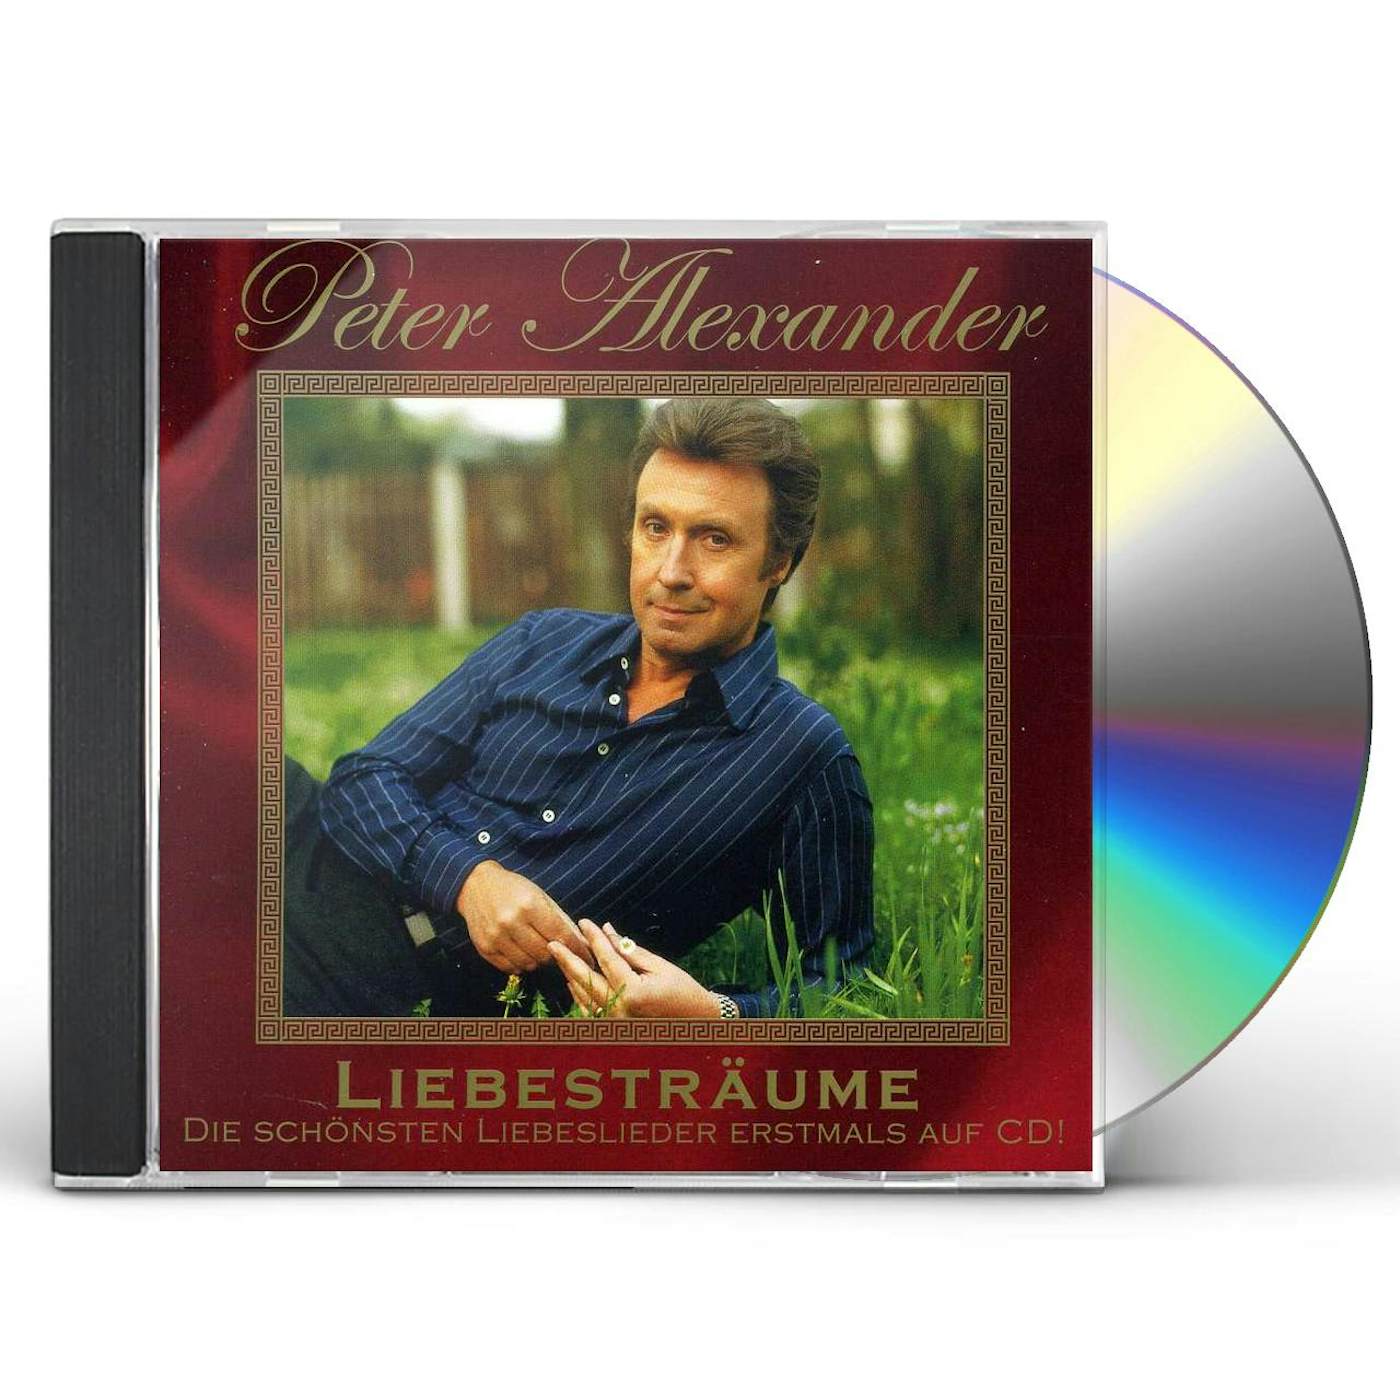 Peter Alexander LIEBESTRAUME CD